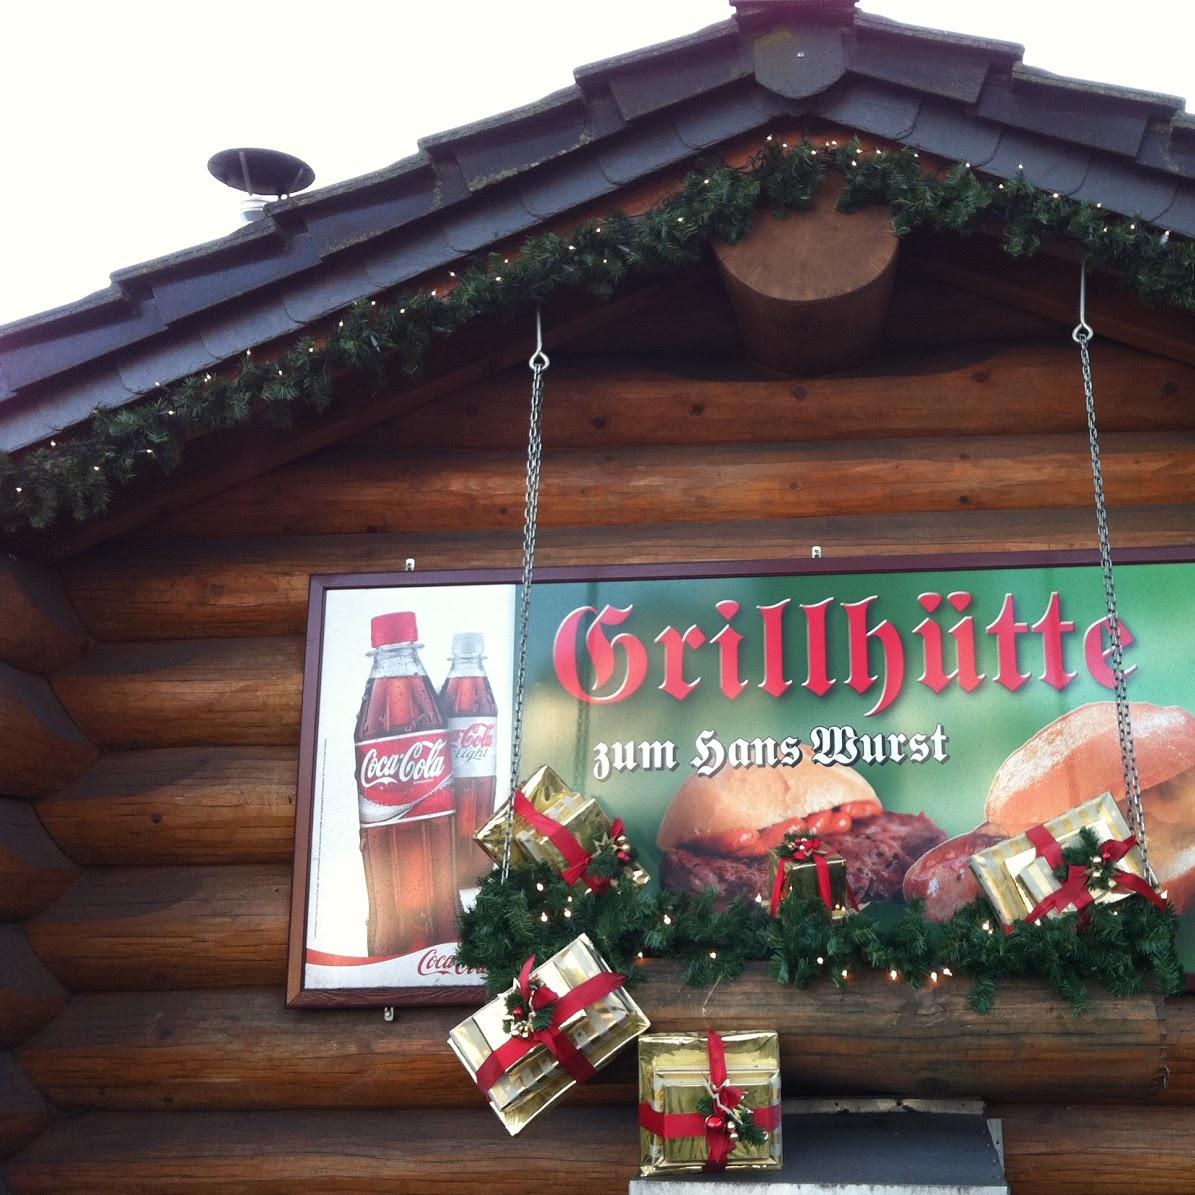 Restaurant "Grillhütte Hans Wurst" in  Oberhof